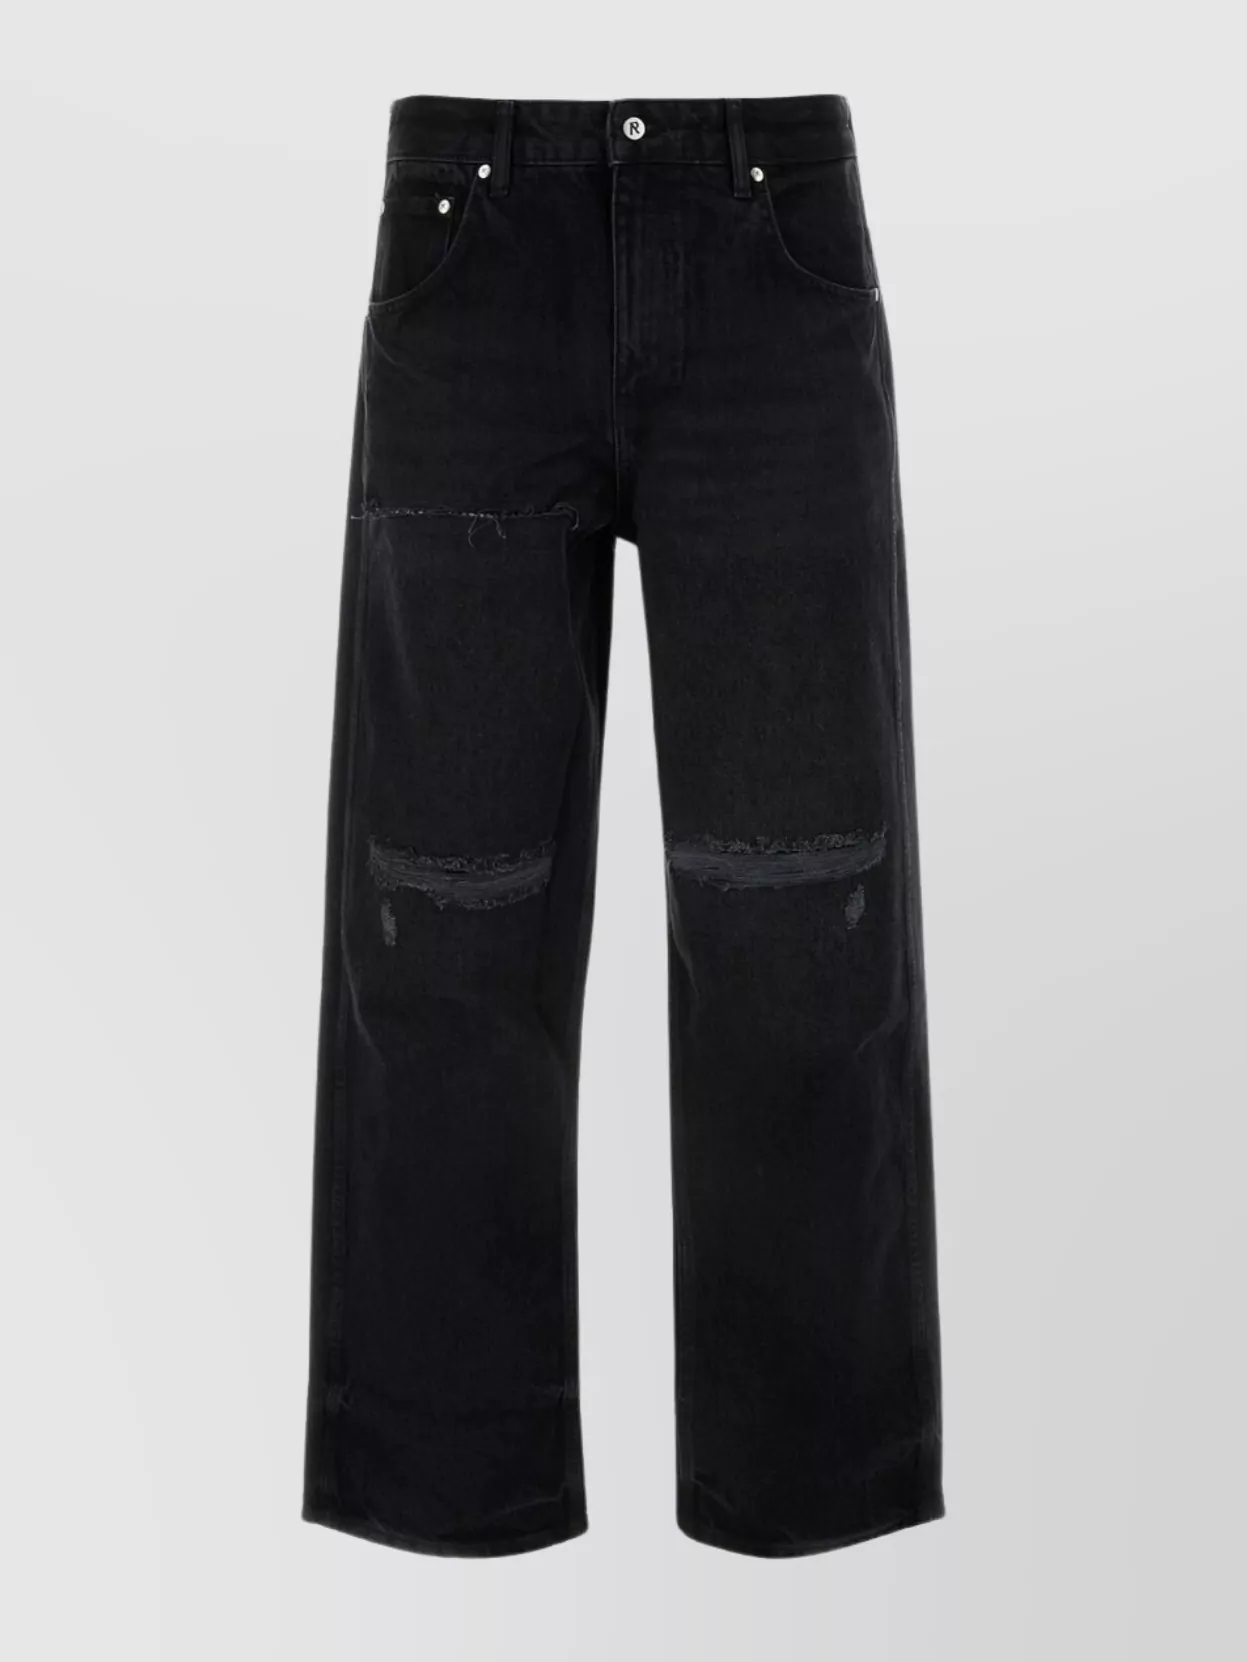 Shop Represent Black Denim Jeans